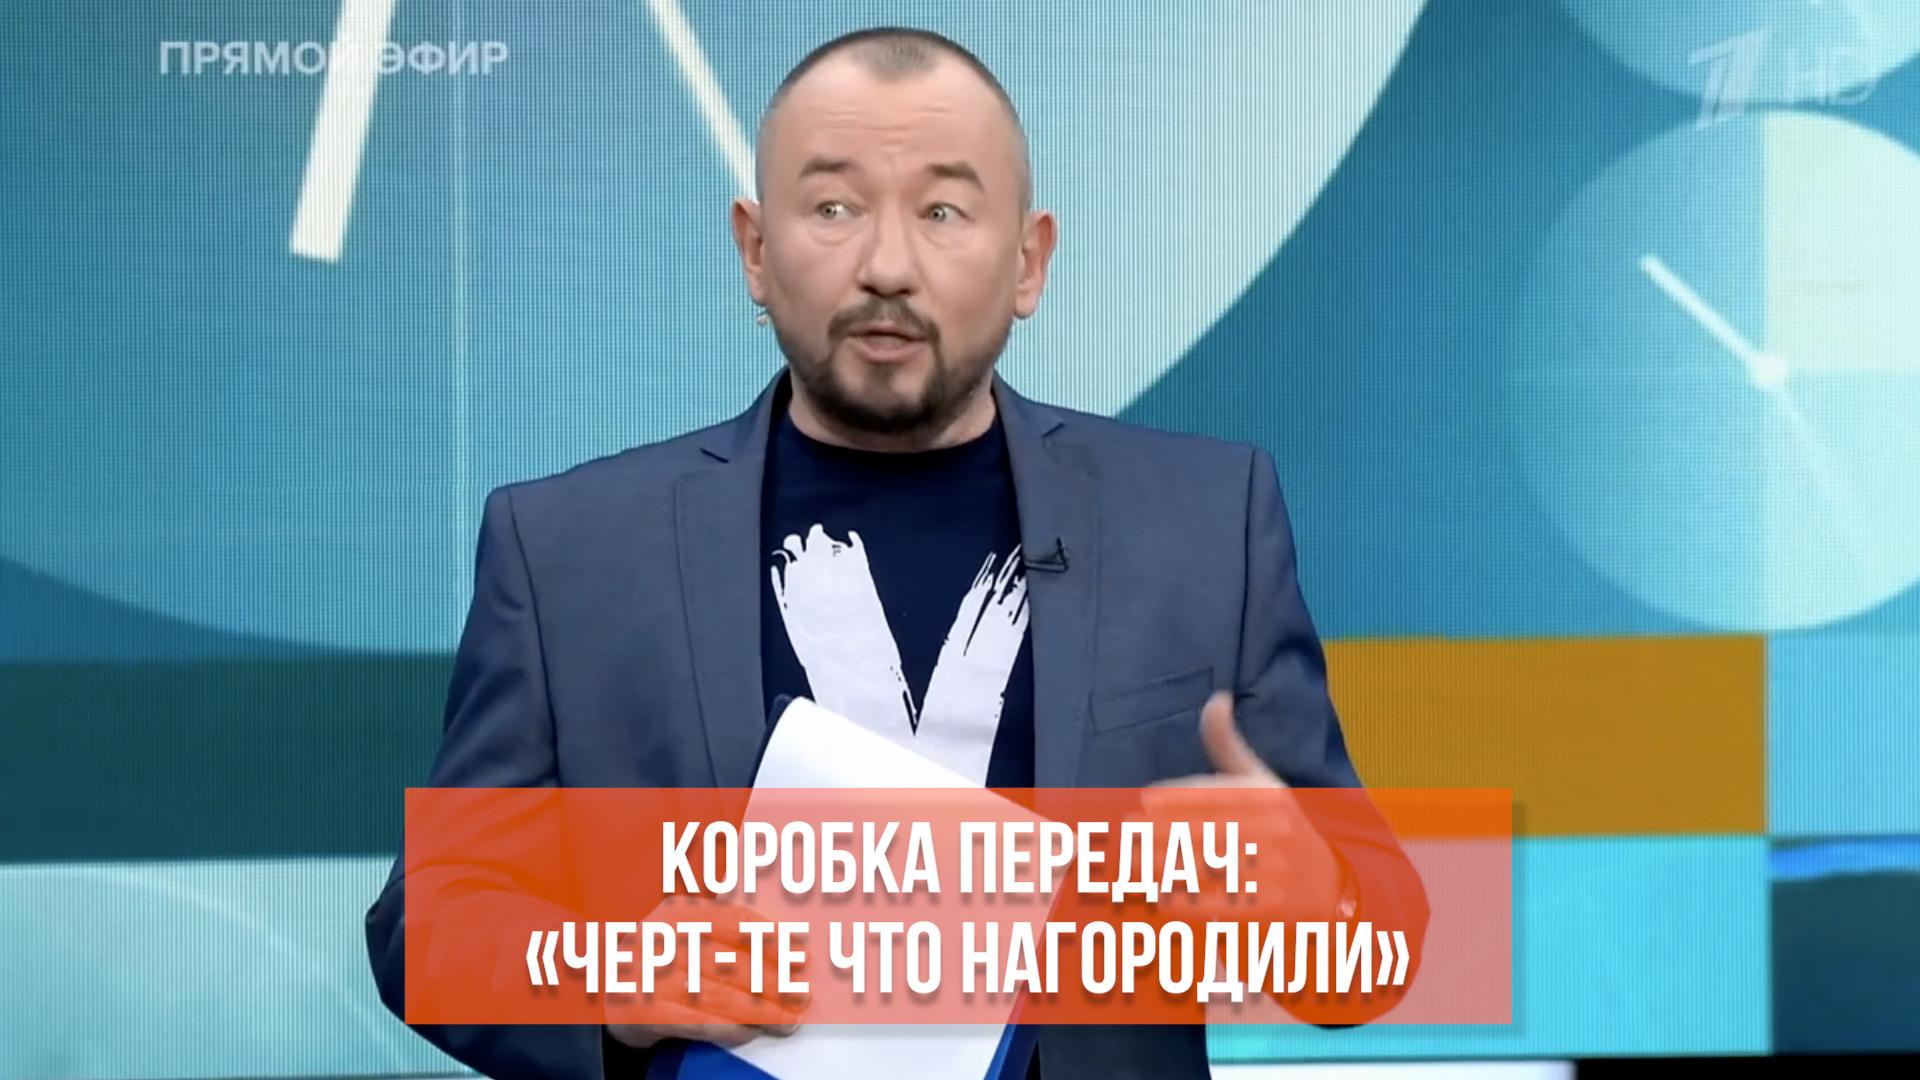 В эфире белорусского ТВ показали порно